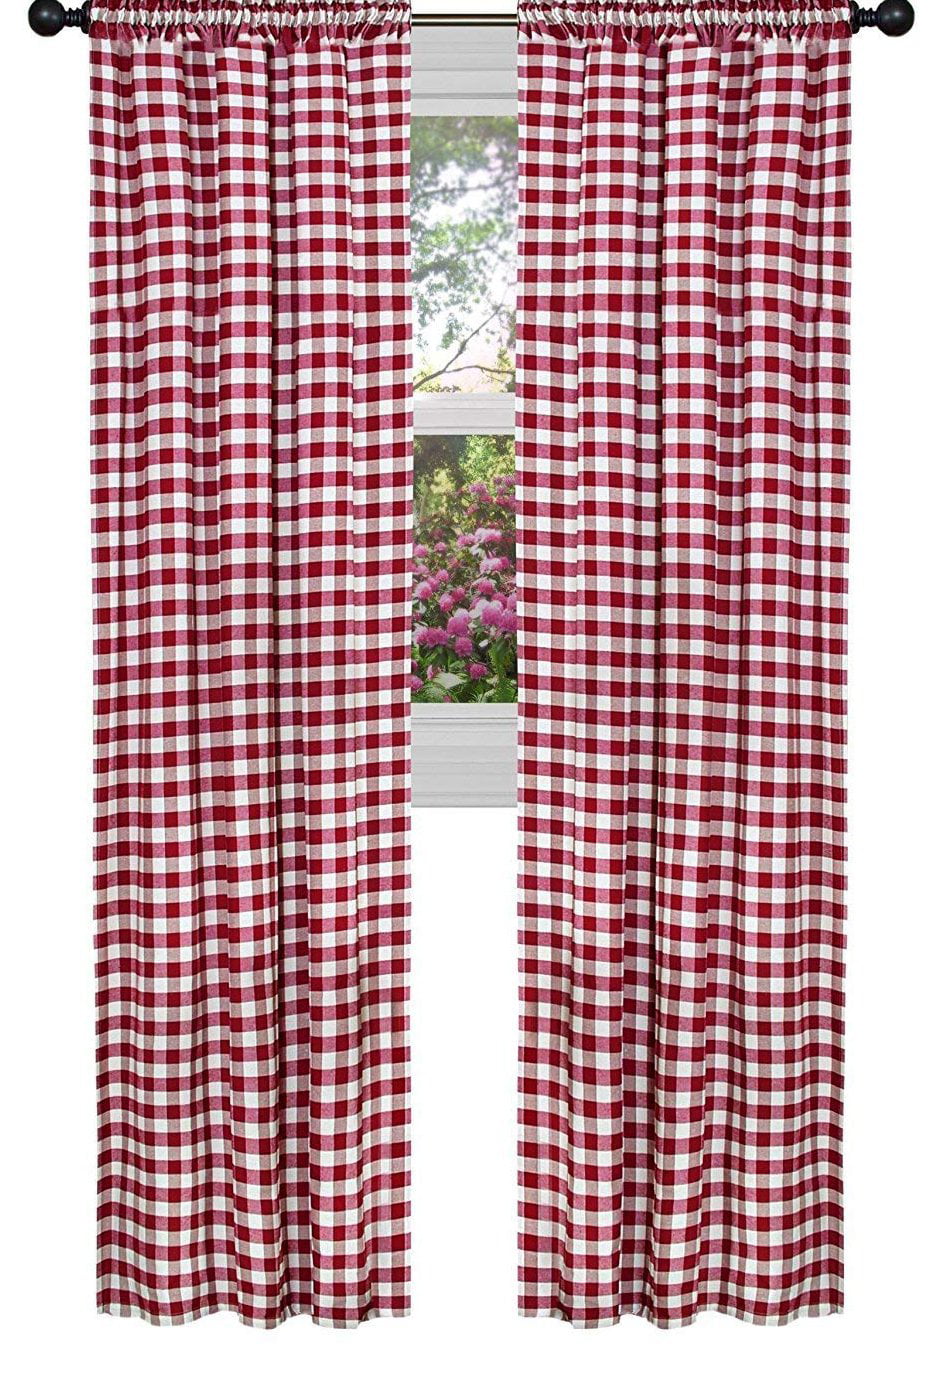 Poplin Gingham Checkered Window Curtain 56 Inch Wide Dark Red - Walmart ...